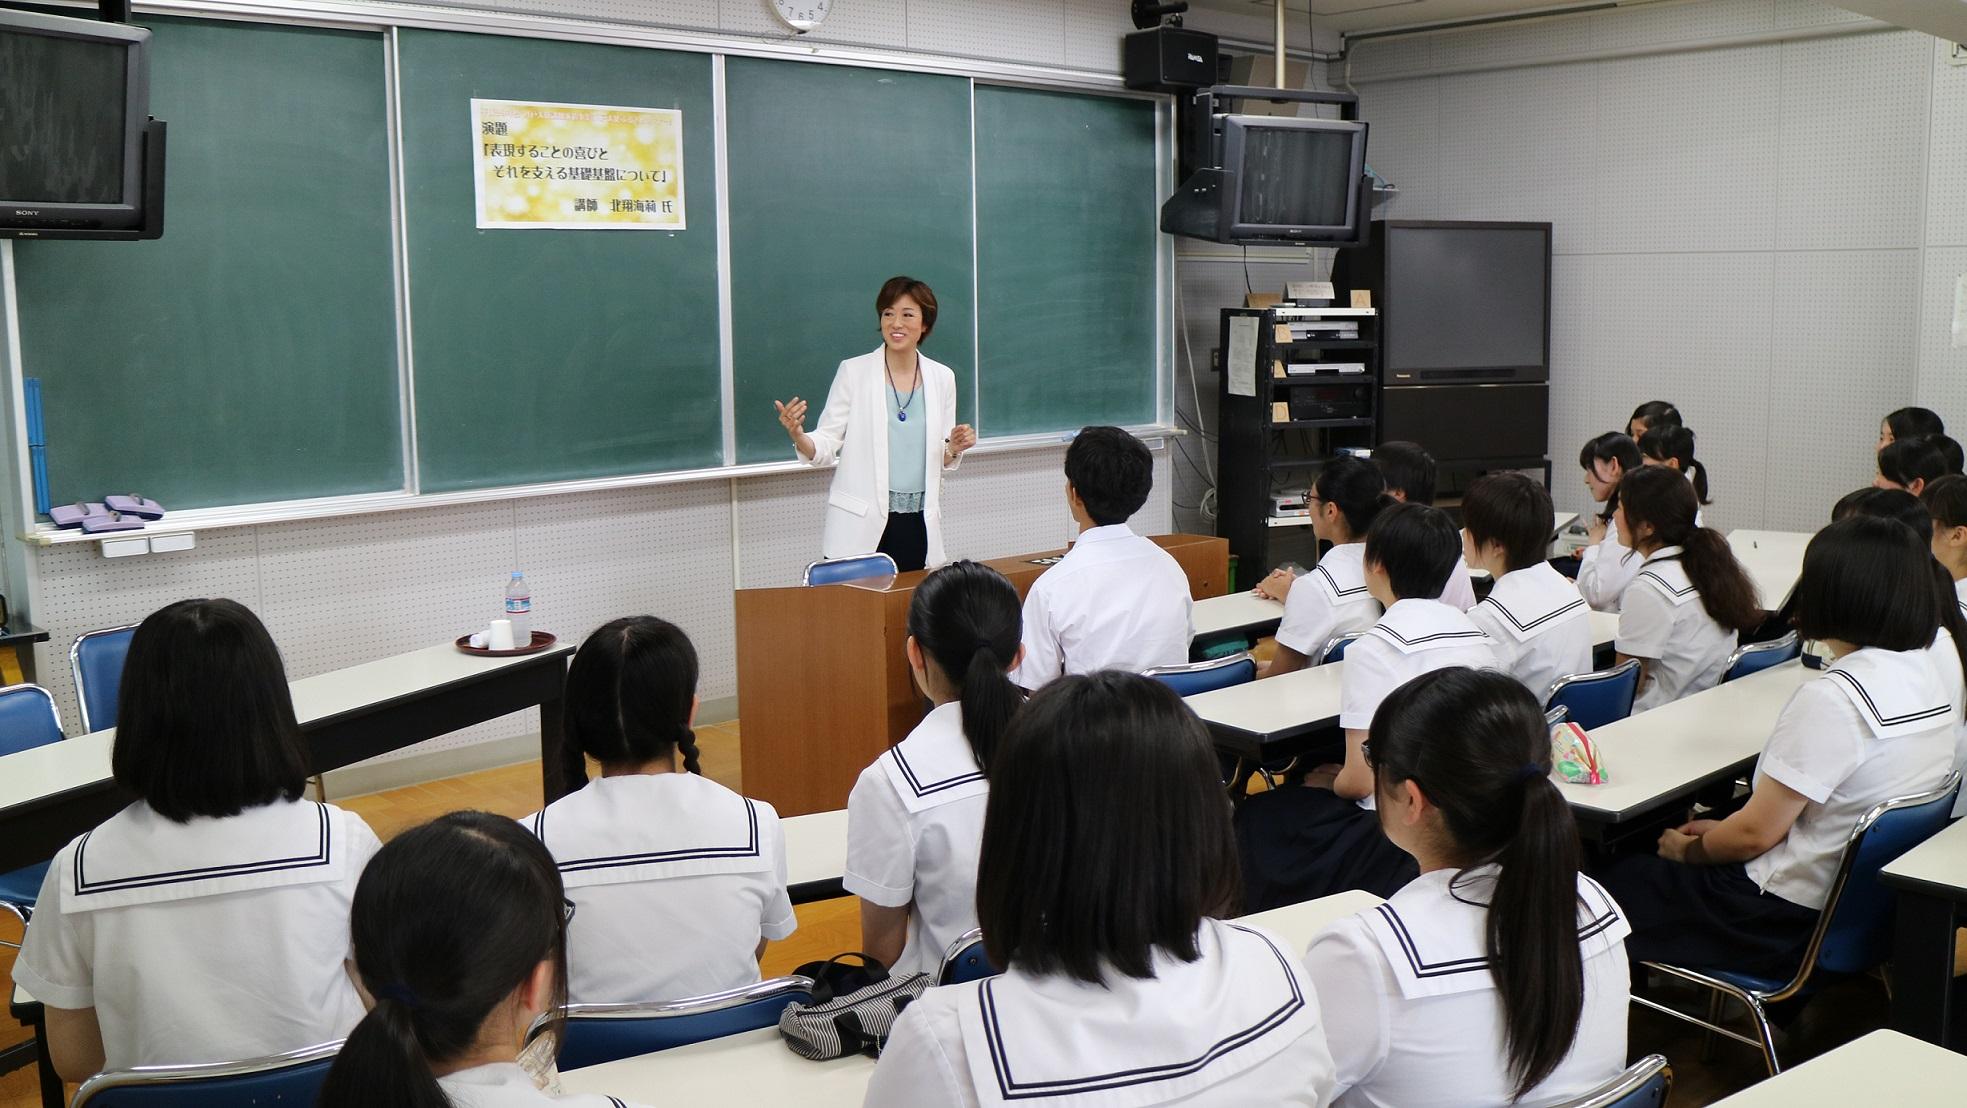 教室で着席している生徒たちの後姿と、前で身振りをしながら話をしている北翔さんの写真